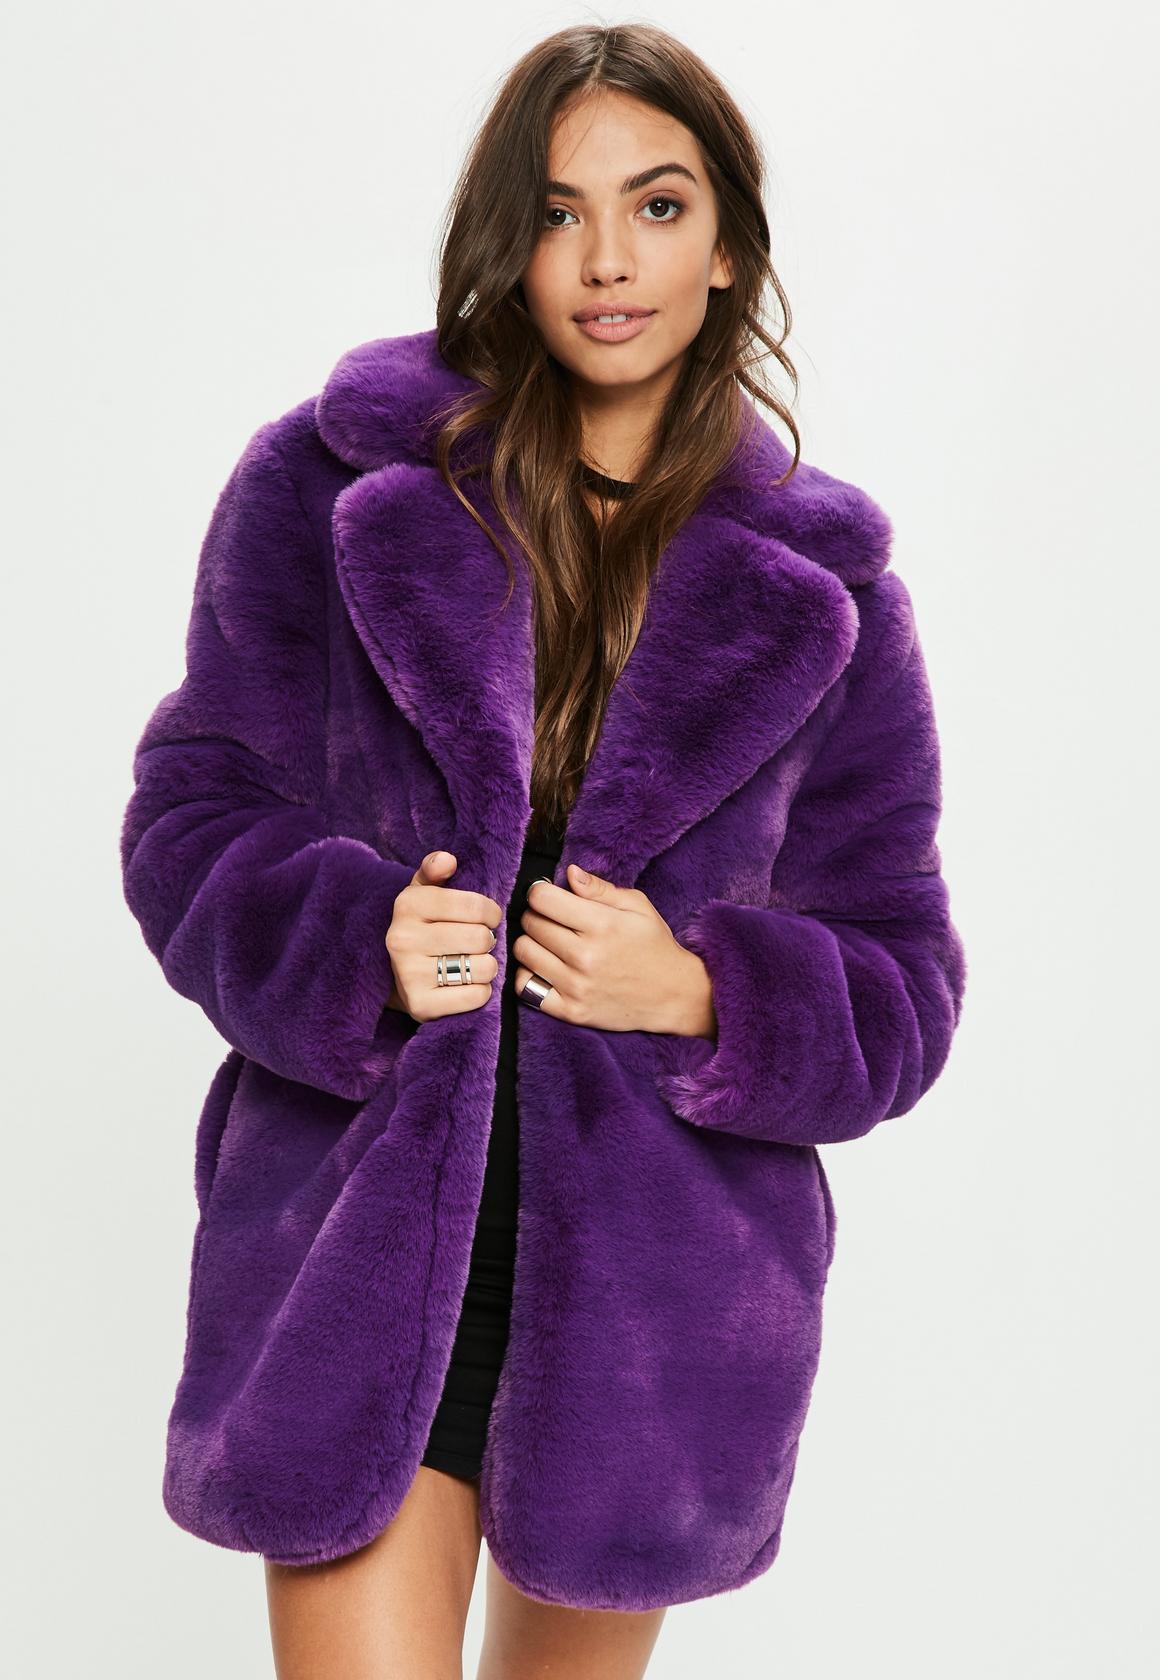 Missguided Faux Fur Coat $111